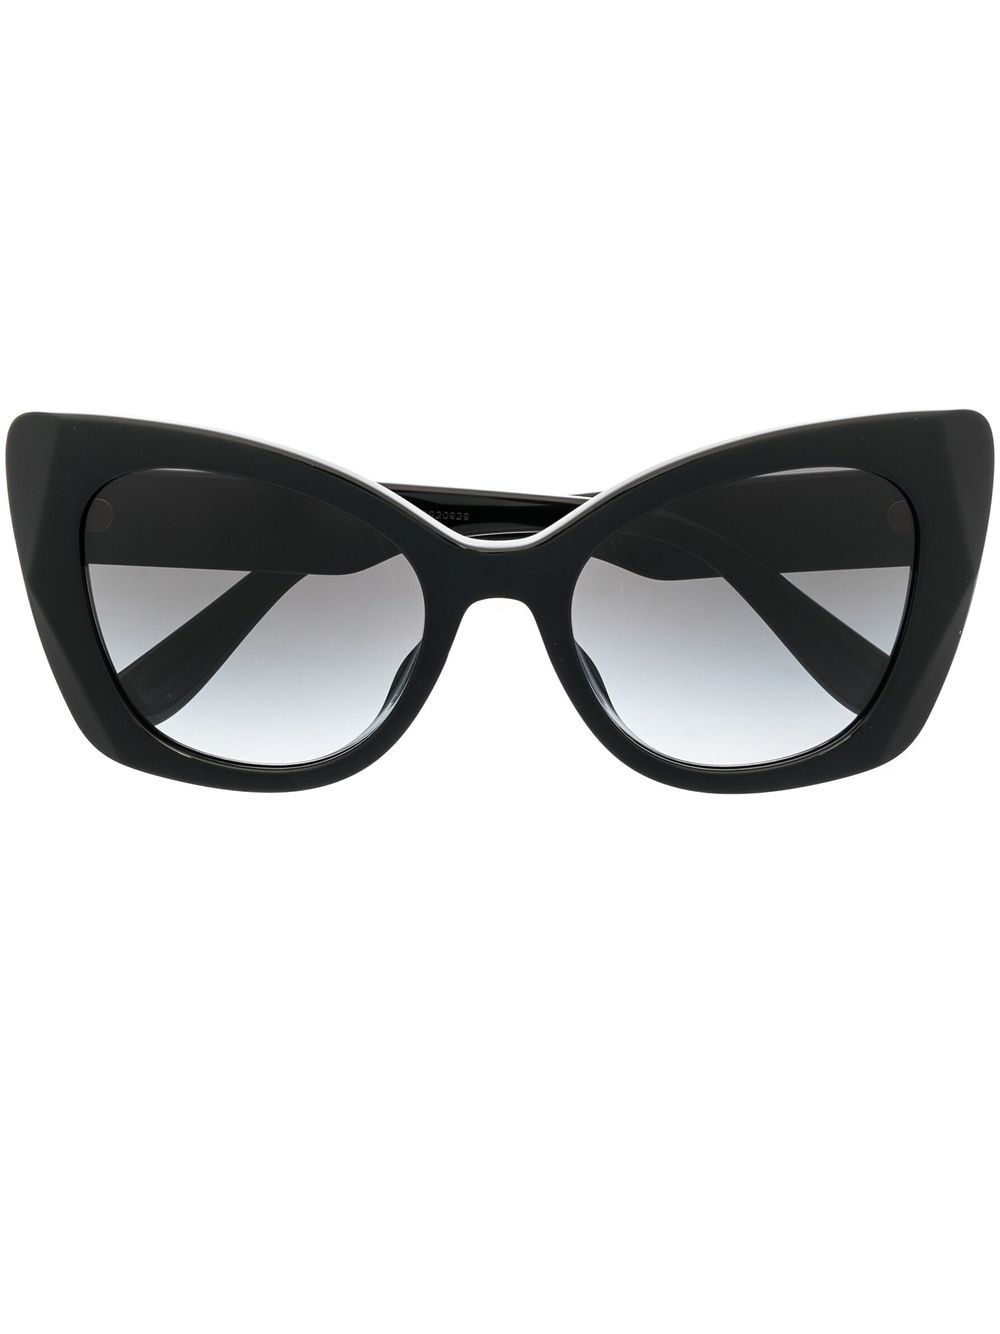 Cat-eye sunglasses Dolce & Gabbana